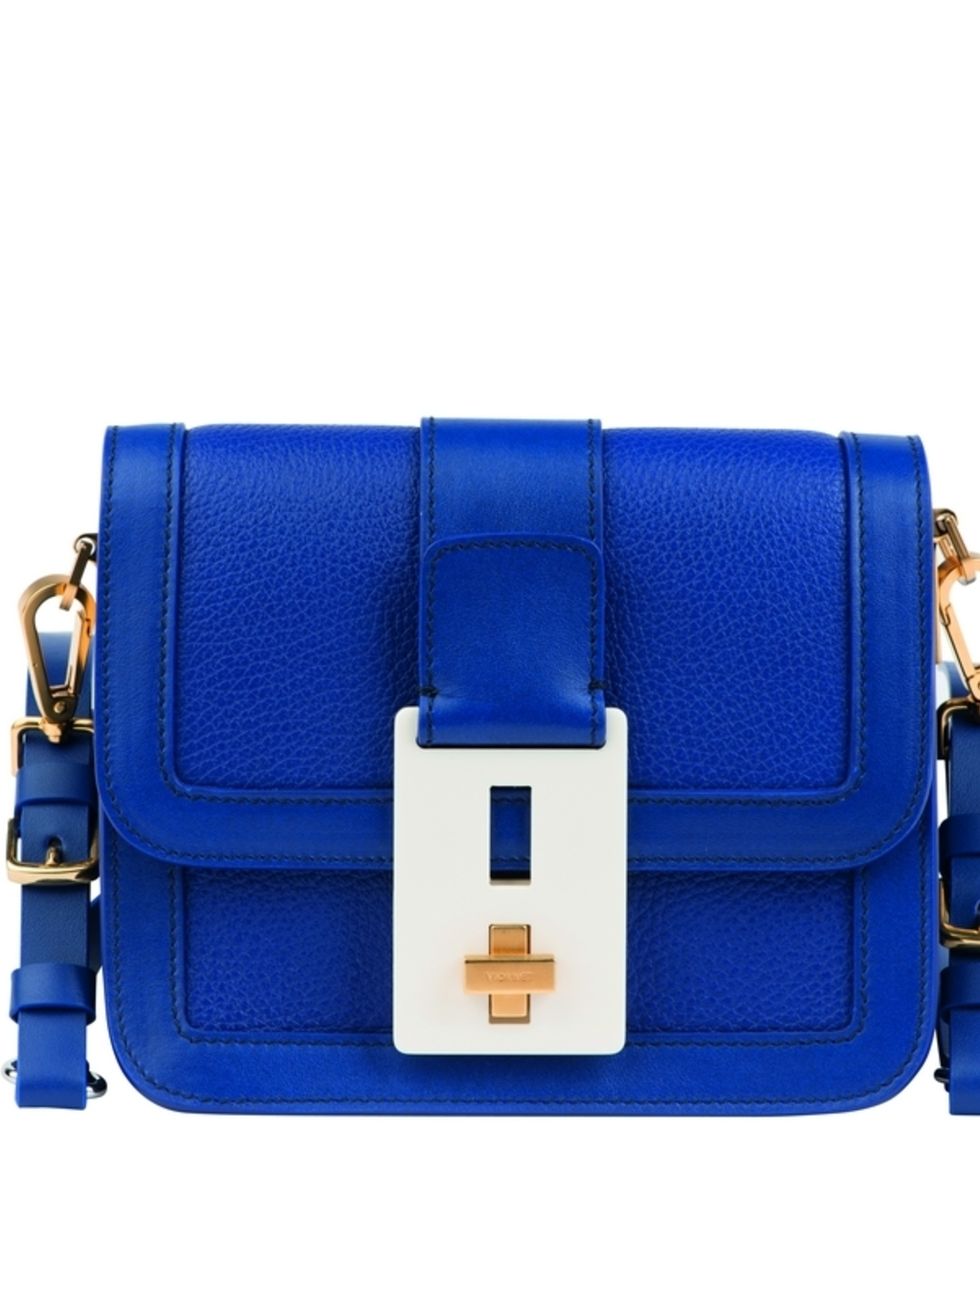 Blue, Textile, Bag, Electric blue, Cobalt blue, Azure, Leather, Pocket, Strap, Buckle, 